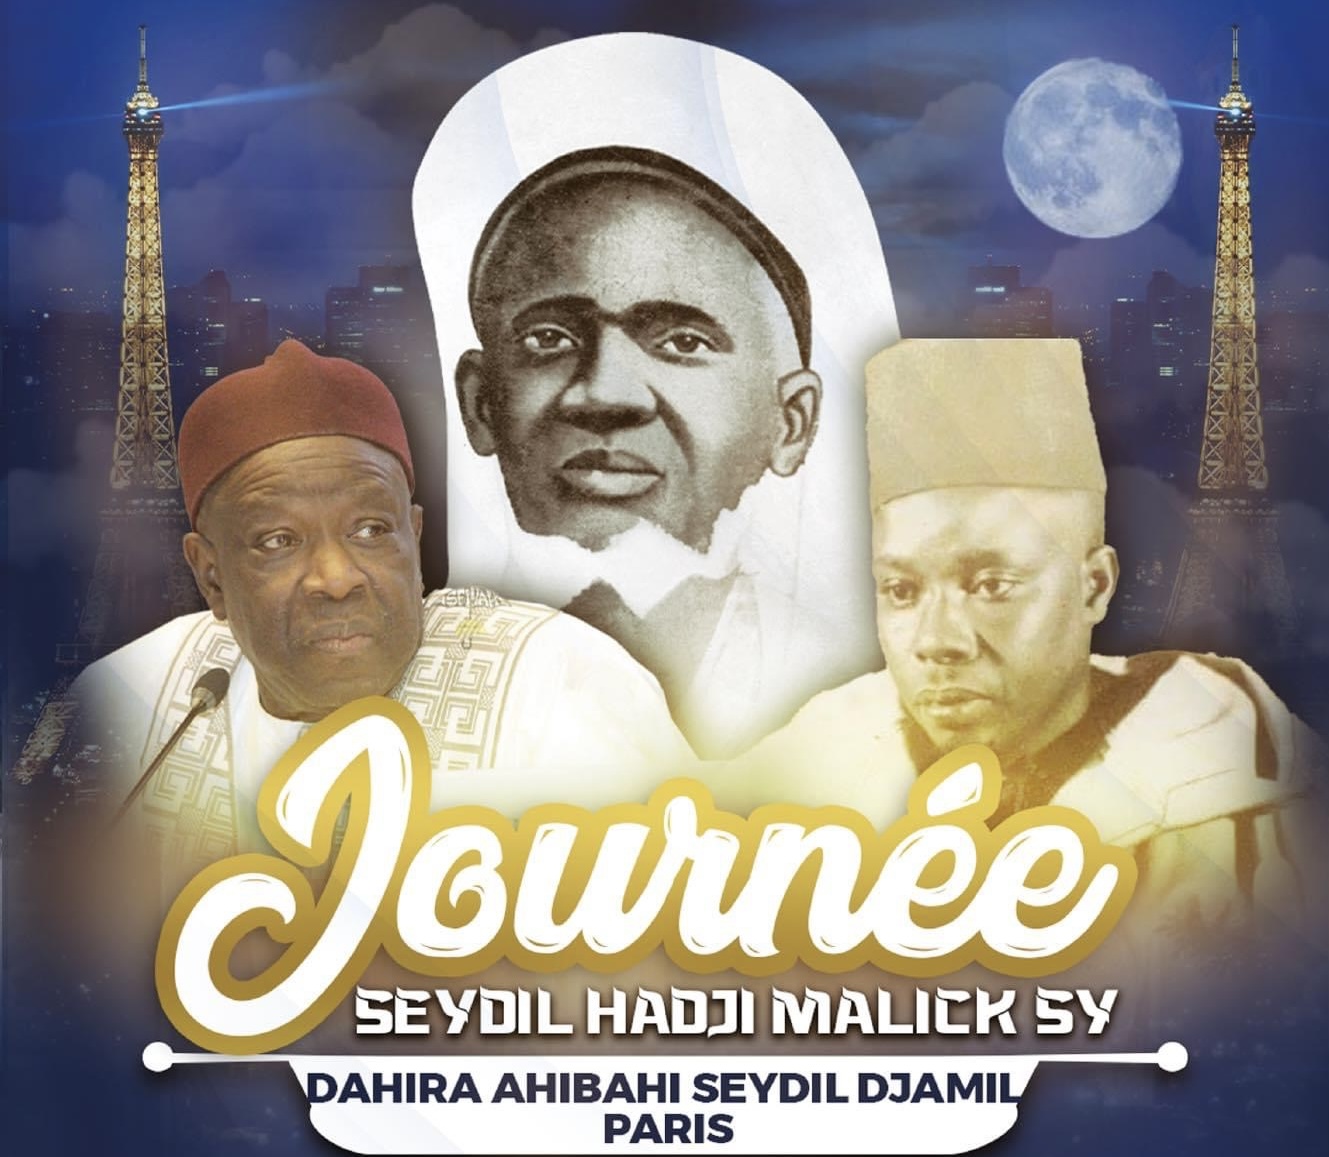 Communiqué : 11ème édition de la journée culturelle Seydi El Hadji Malik Sy à Paris : La Dahira Ahibahi Seydi Djamil donne en miroir les enseignements de Maodo pour une paix durable dans le monde